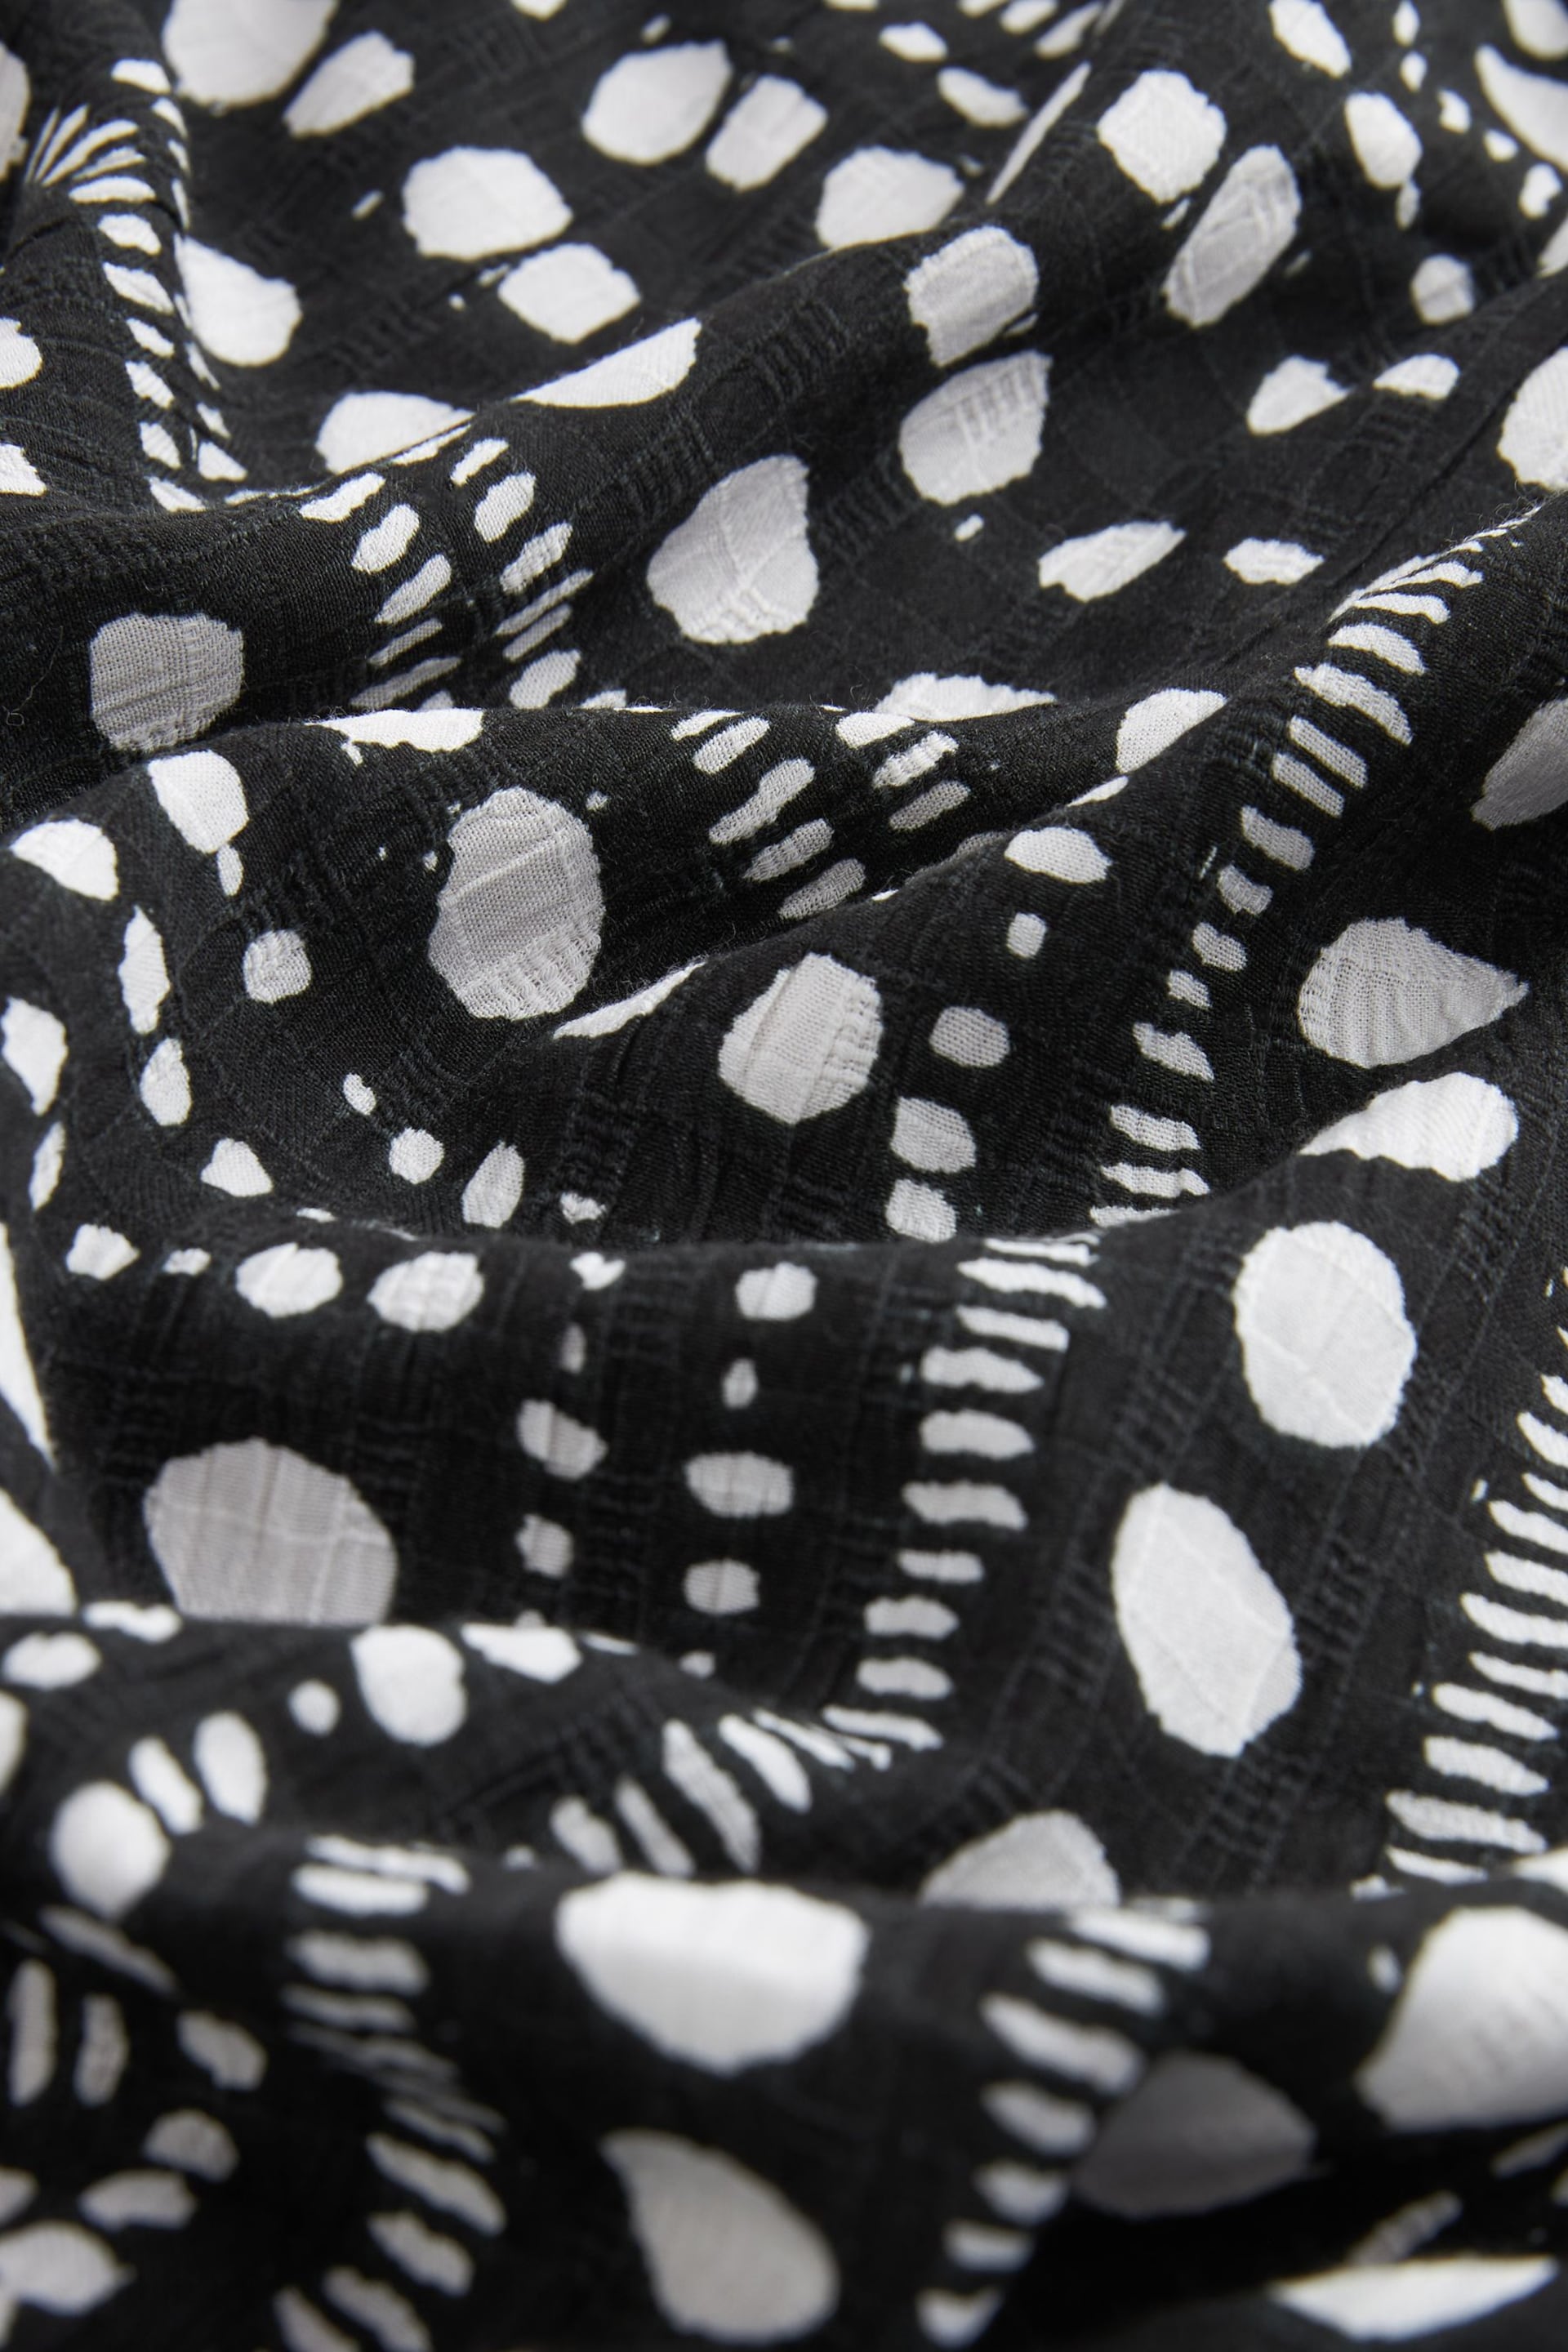 Black/White Spot Off Shoulder Summer Dress - Image 6 of 6